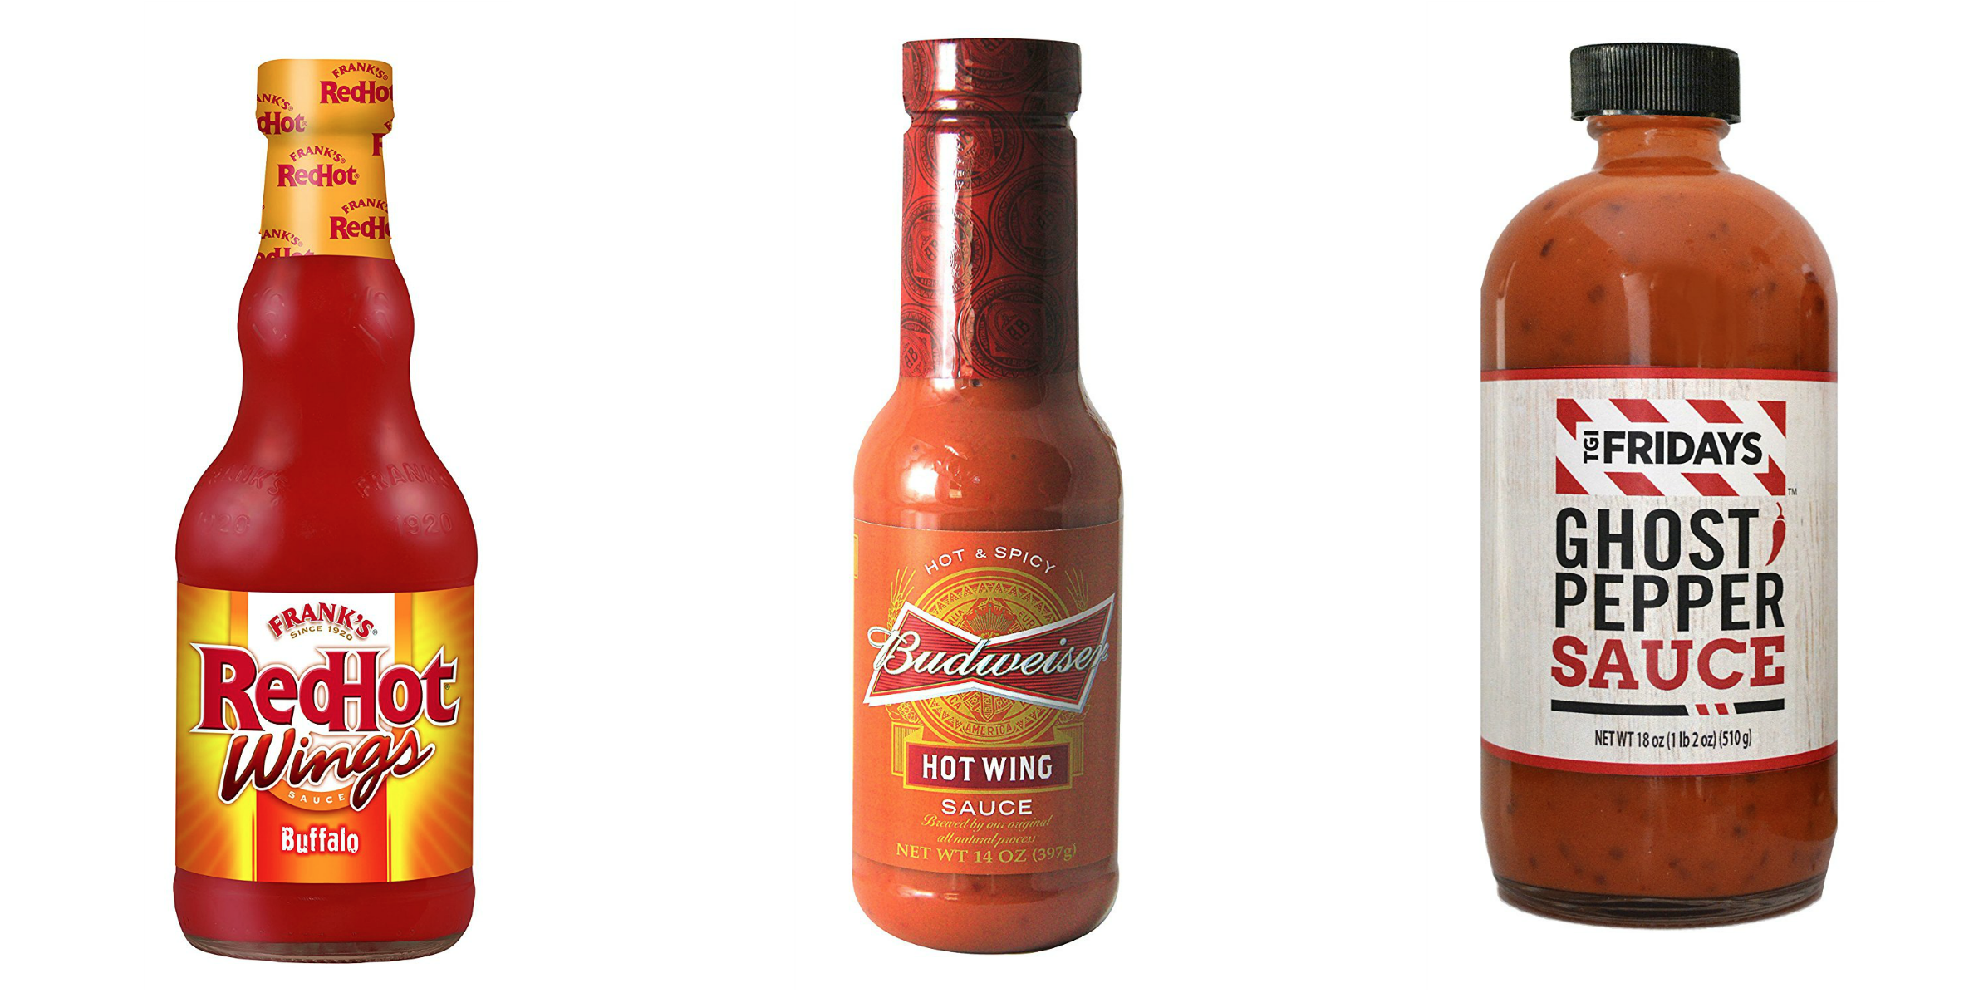 Louisiana Wing Sauce - The Original - Hot Sauce Review